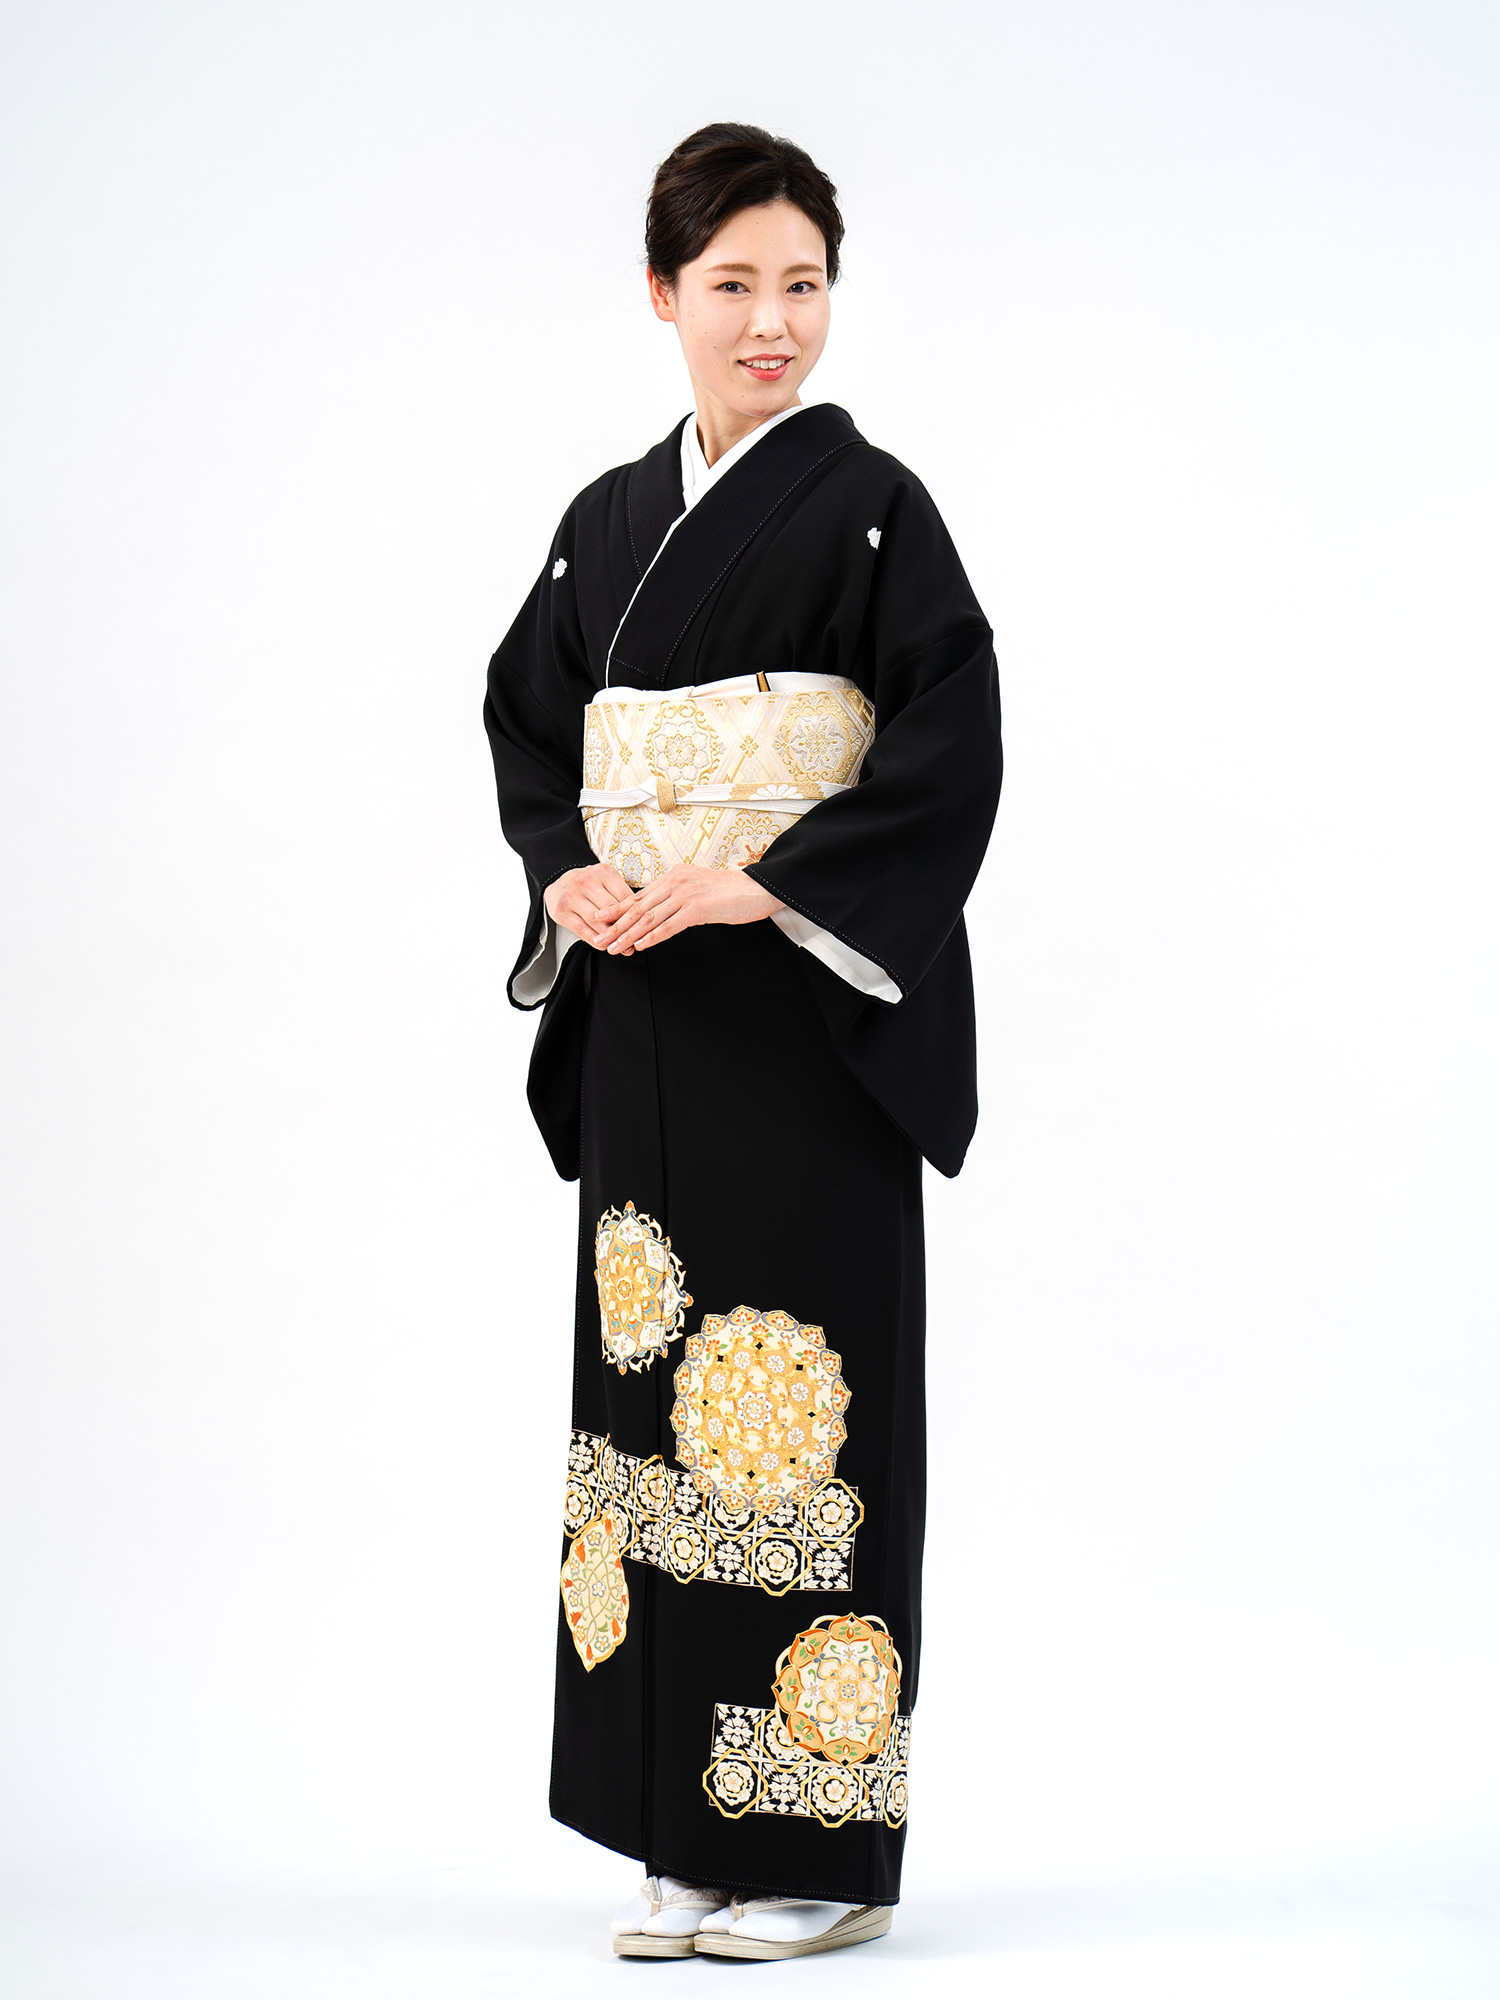 金駒などの刺繍を散りばめた京友禅黒留袖の着姿。レンタル商品としてご提案。